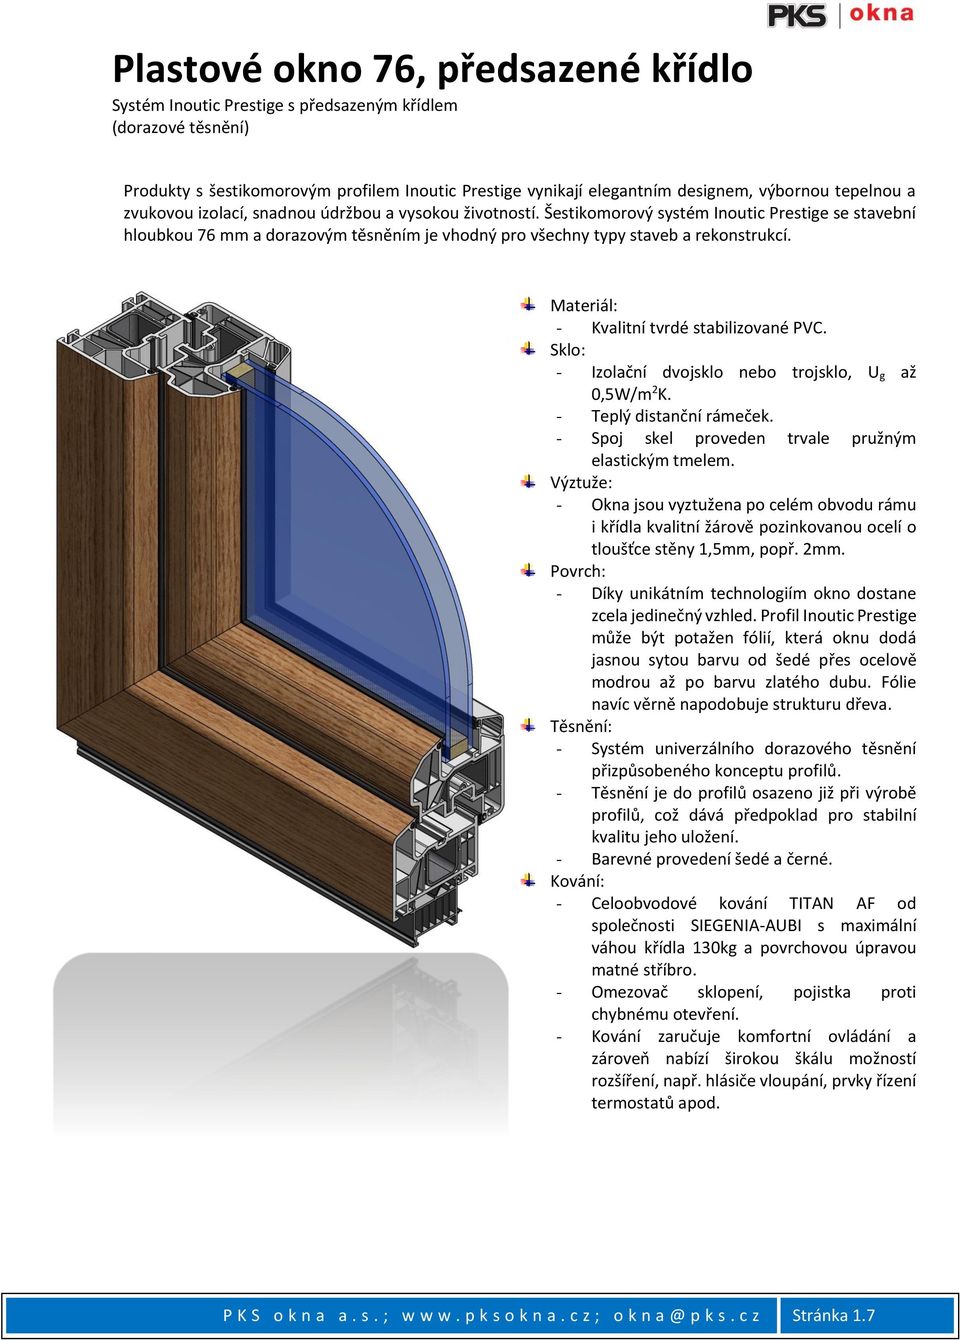 Šestikomorový systém Inoutic Prestige se stavební hloubkou 76 mm a dorazovým těsněním je vhodný pro všechny typy staveb a rekonstrukcí. Materiál: - Kvalitní tvrdé stabilizované PVC.